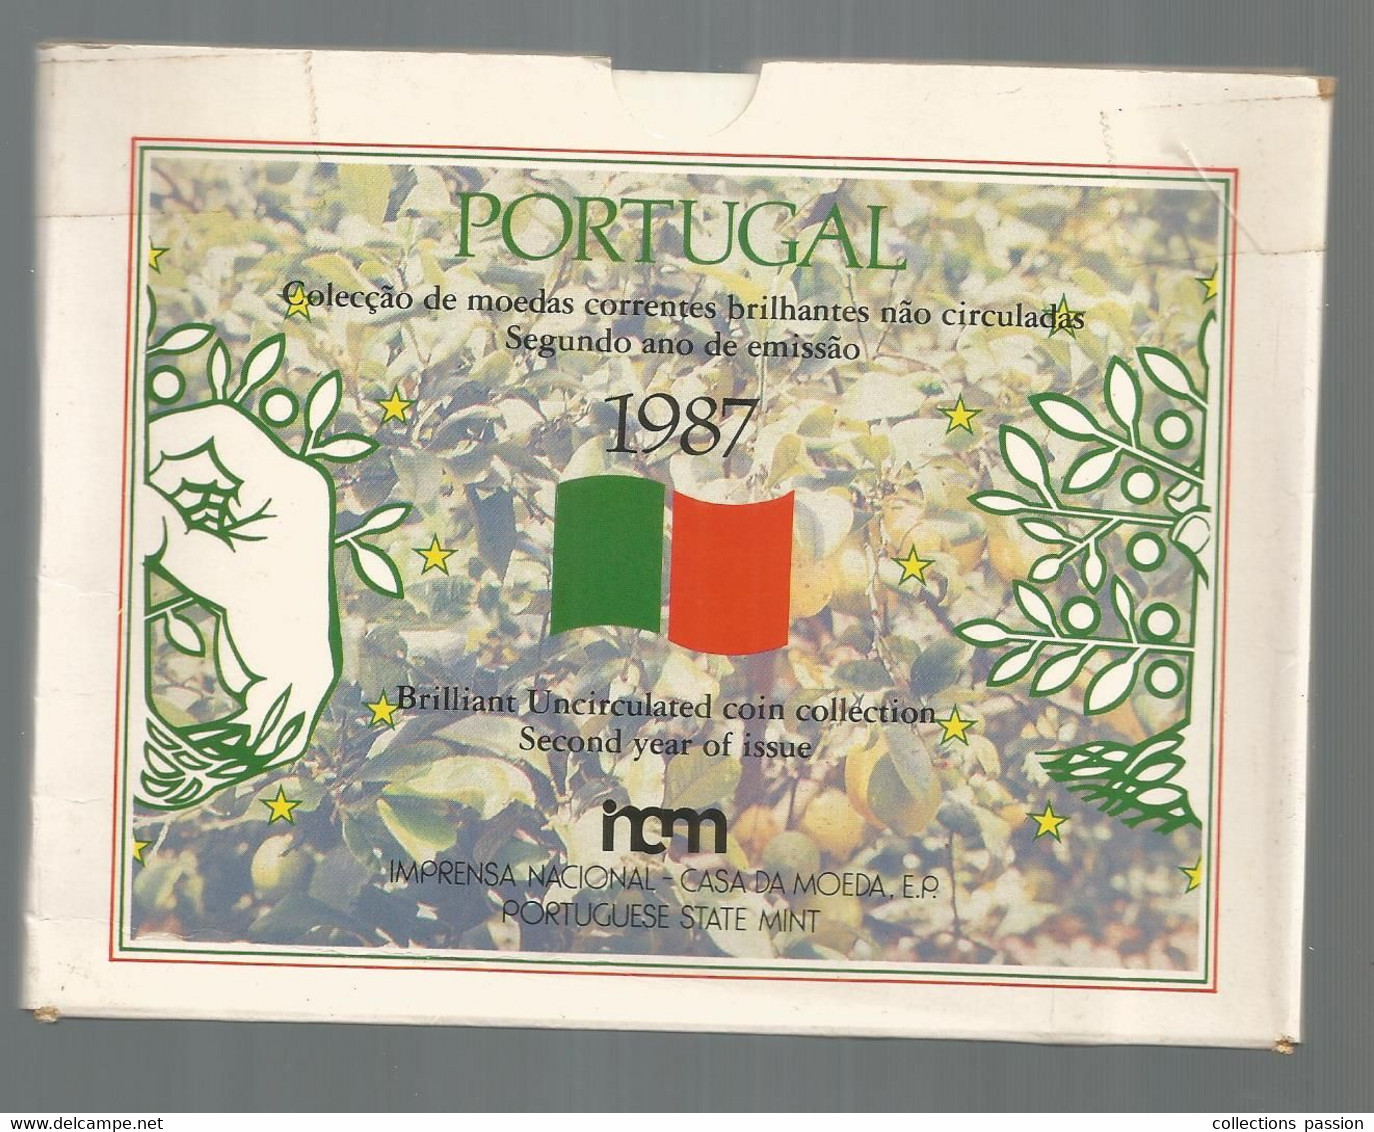 JC, Colecçao De Modeas Correntes Brilhantes Nao Circuladas,segundo Ano De Emissao 1987, 4 Scans , Frais Fr 4.60 E - Portugal